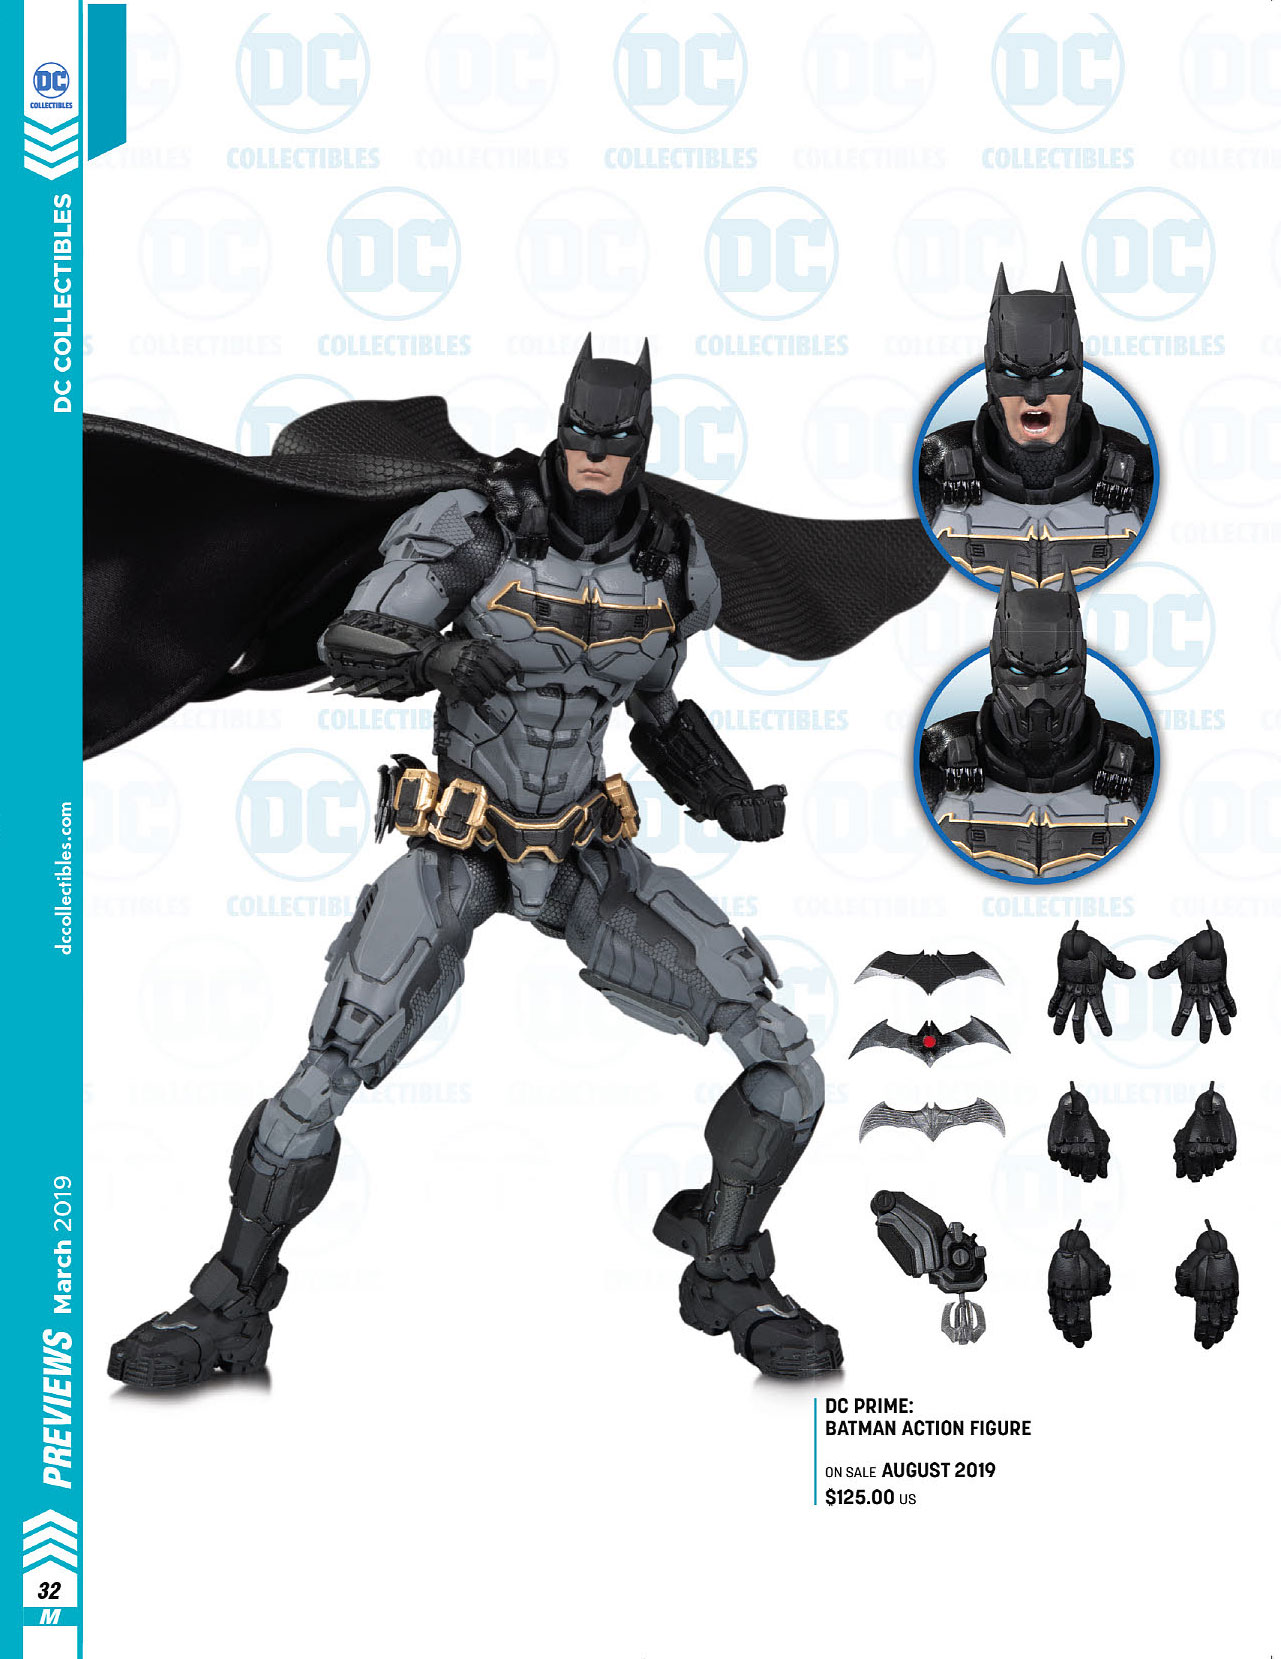 DC Collectibles Kicks Off DC Prime Line With Batman Action Figure -  Previews World